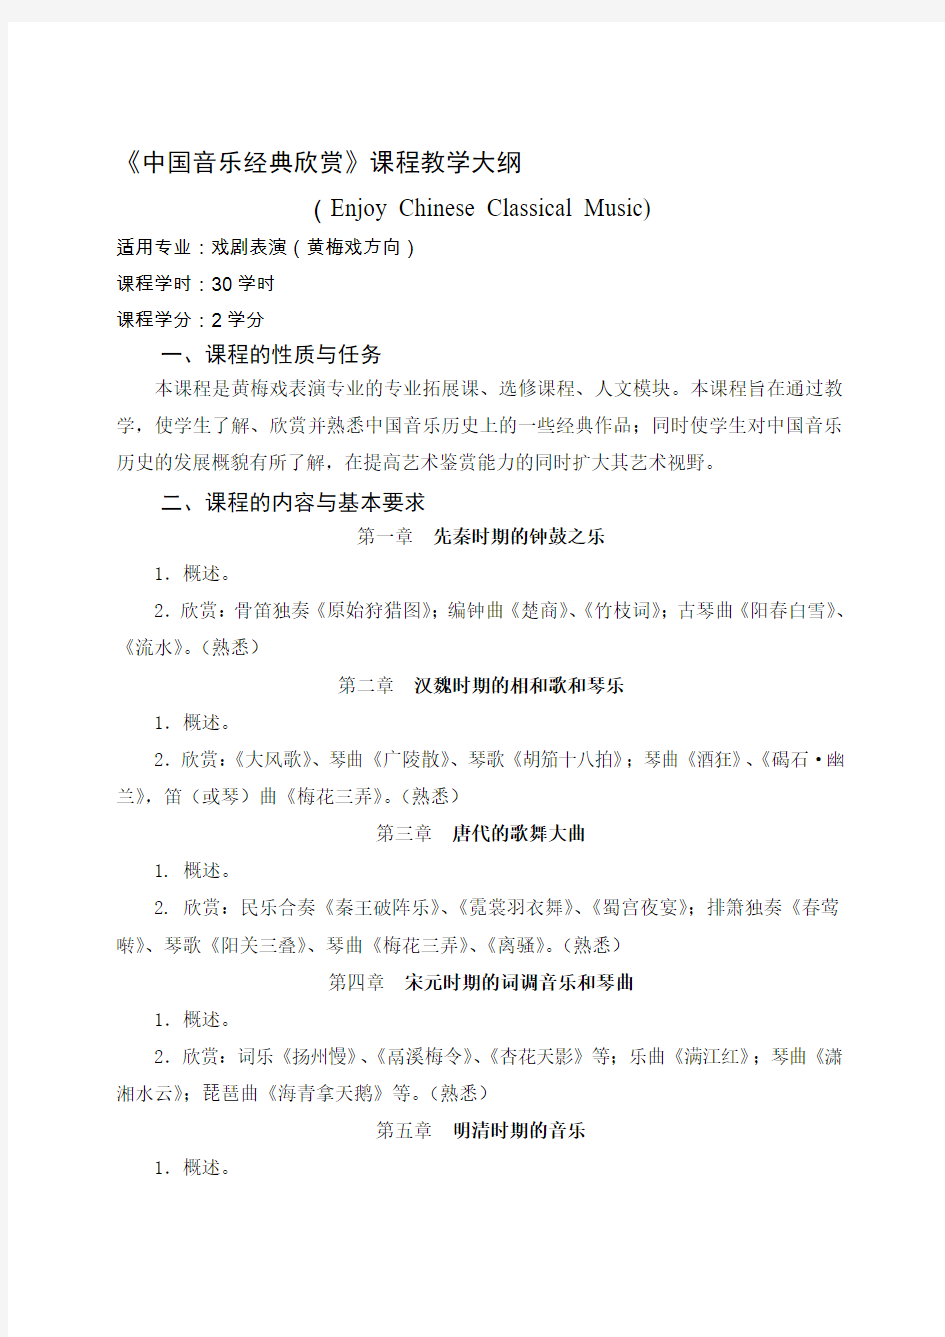 中国音乐经典欣赏课程教学大纲